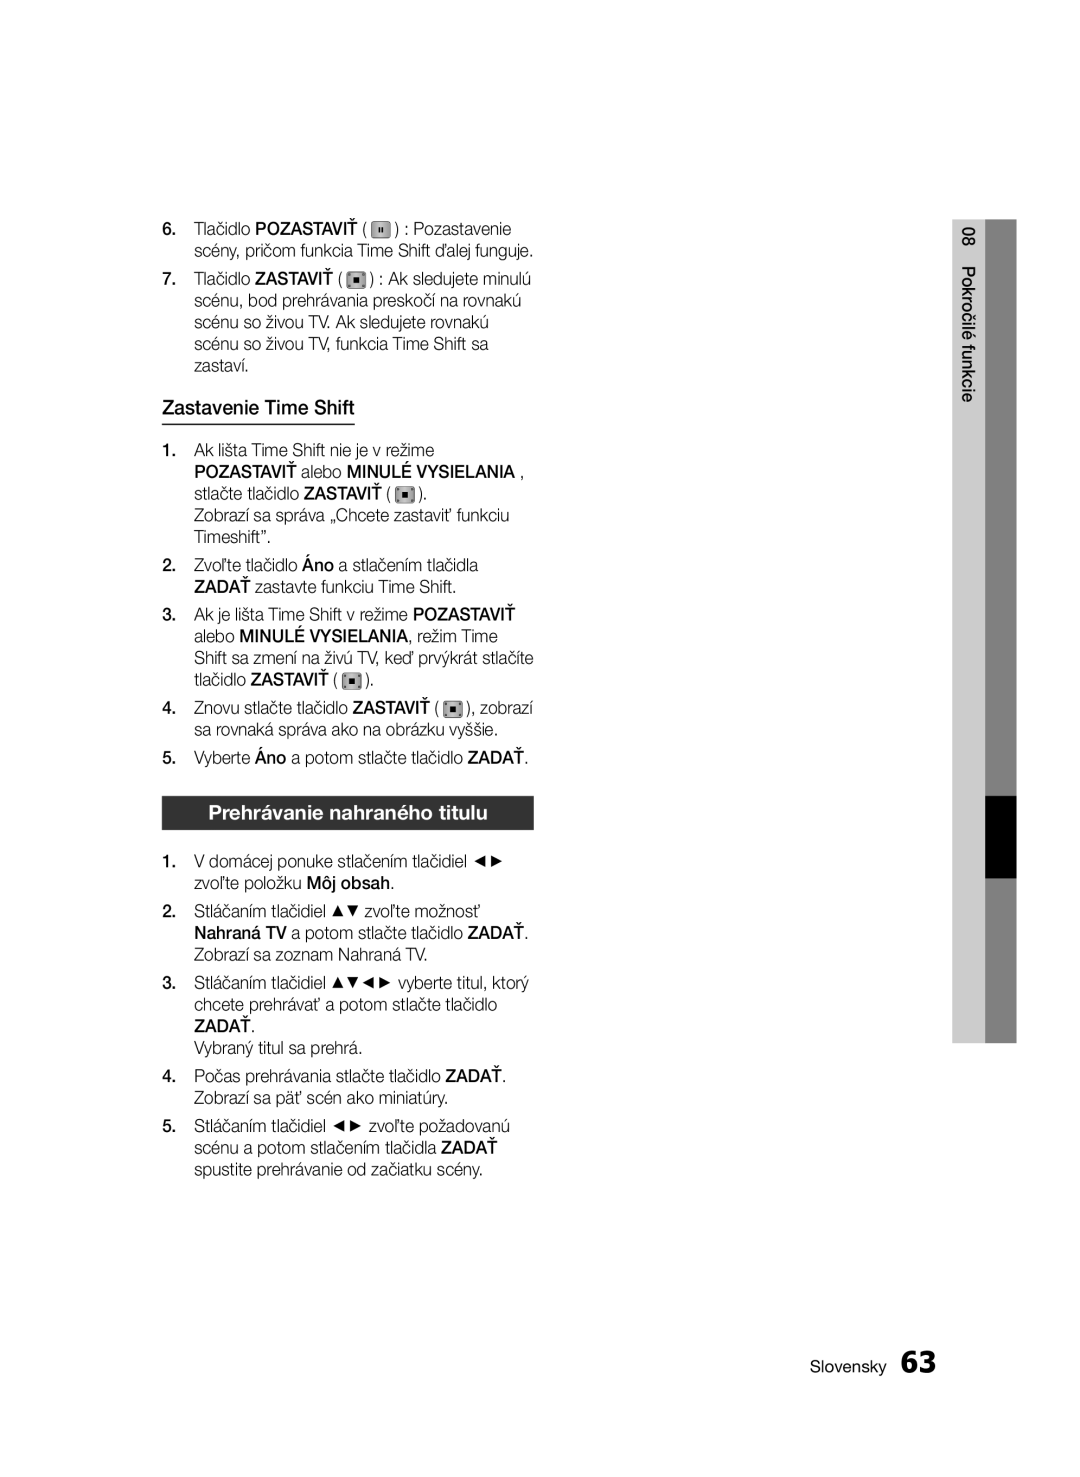 Samsung BD-E6300/EN manual Zastavenie Time Shift, Prehrávanie nahraného titulu 